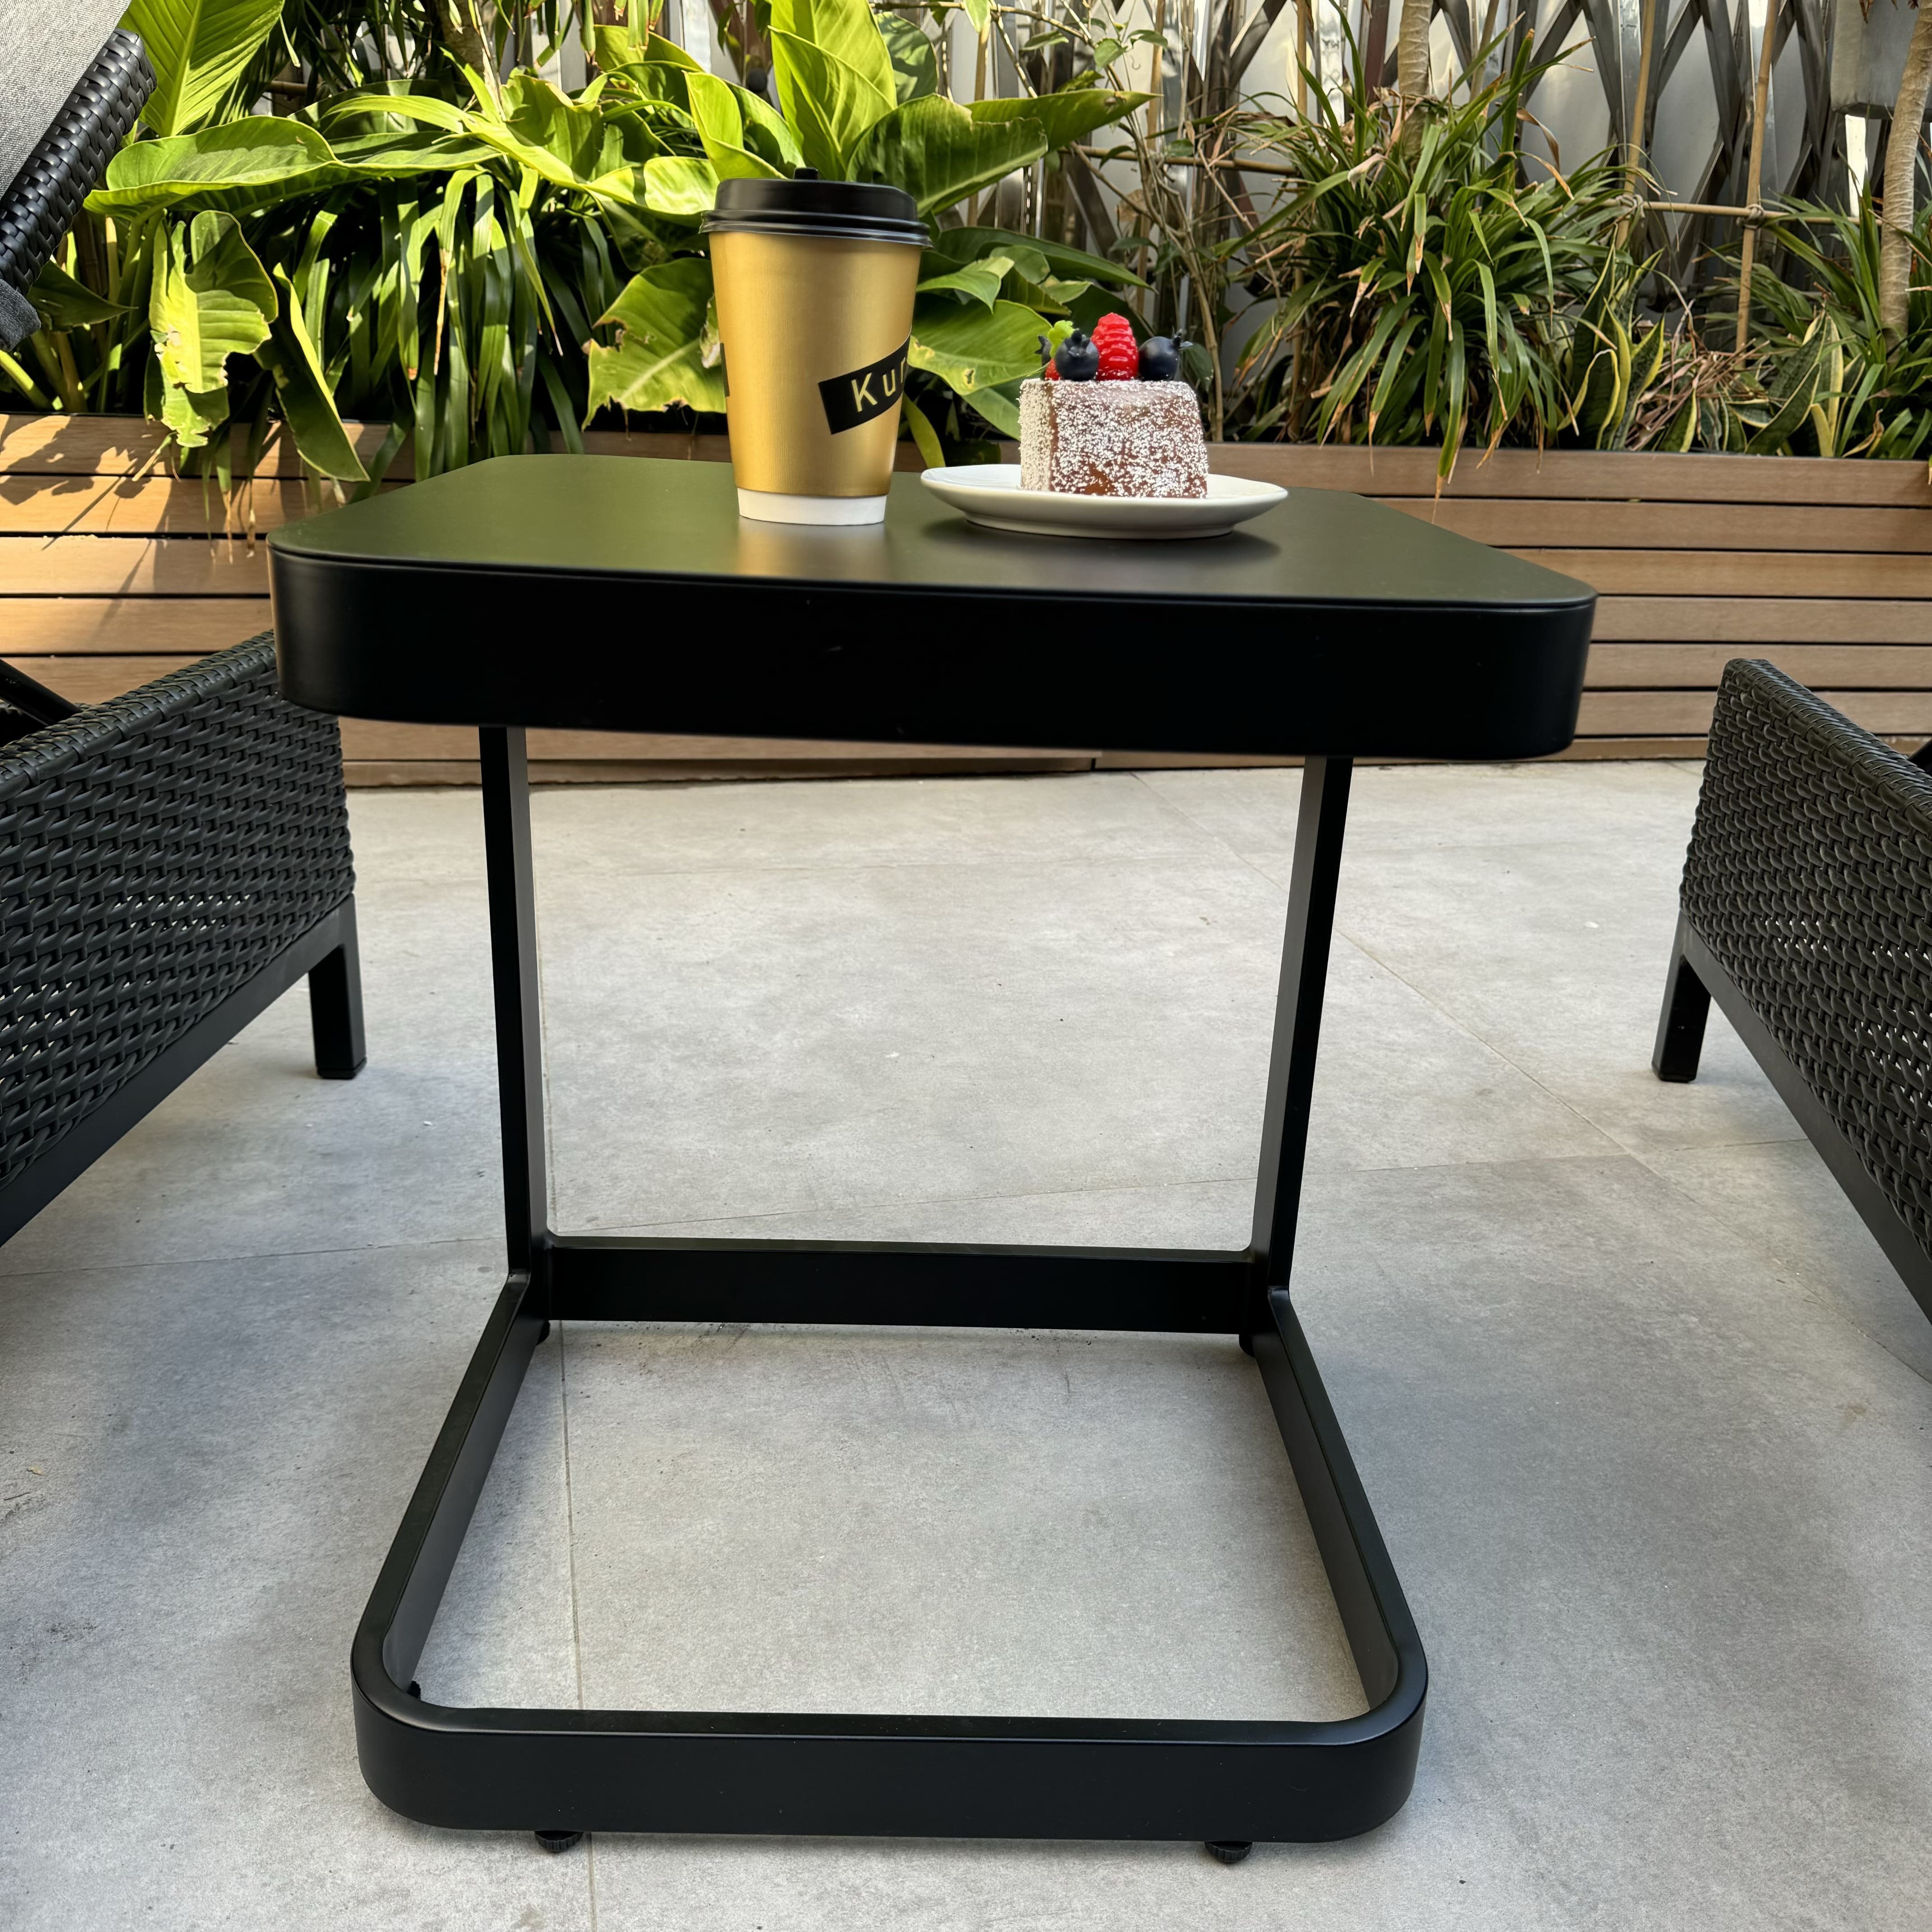 ガーデンファニチャーアウトドアダイニングテーブルセット